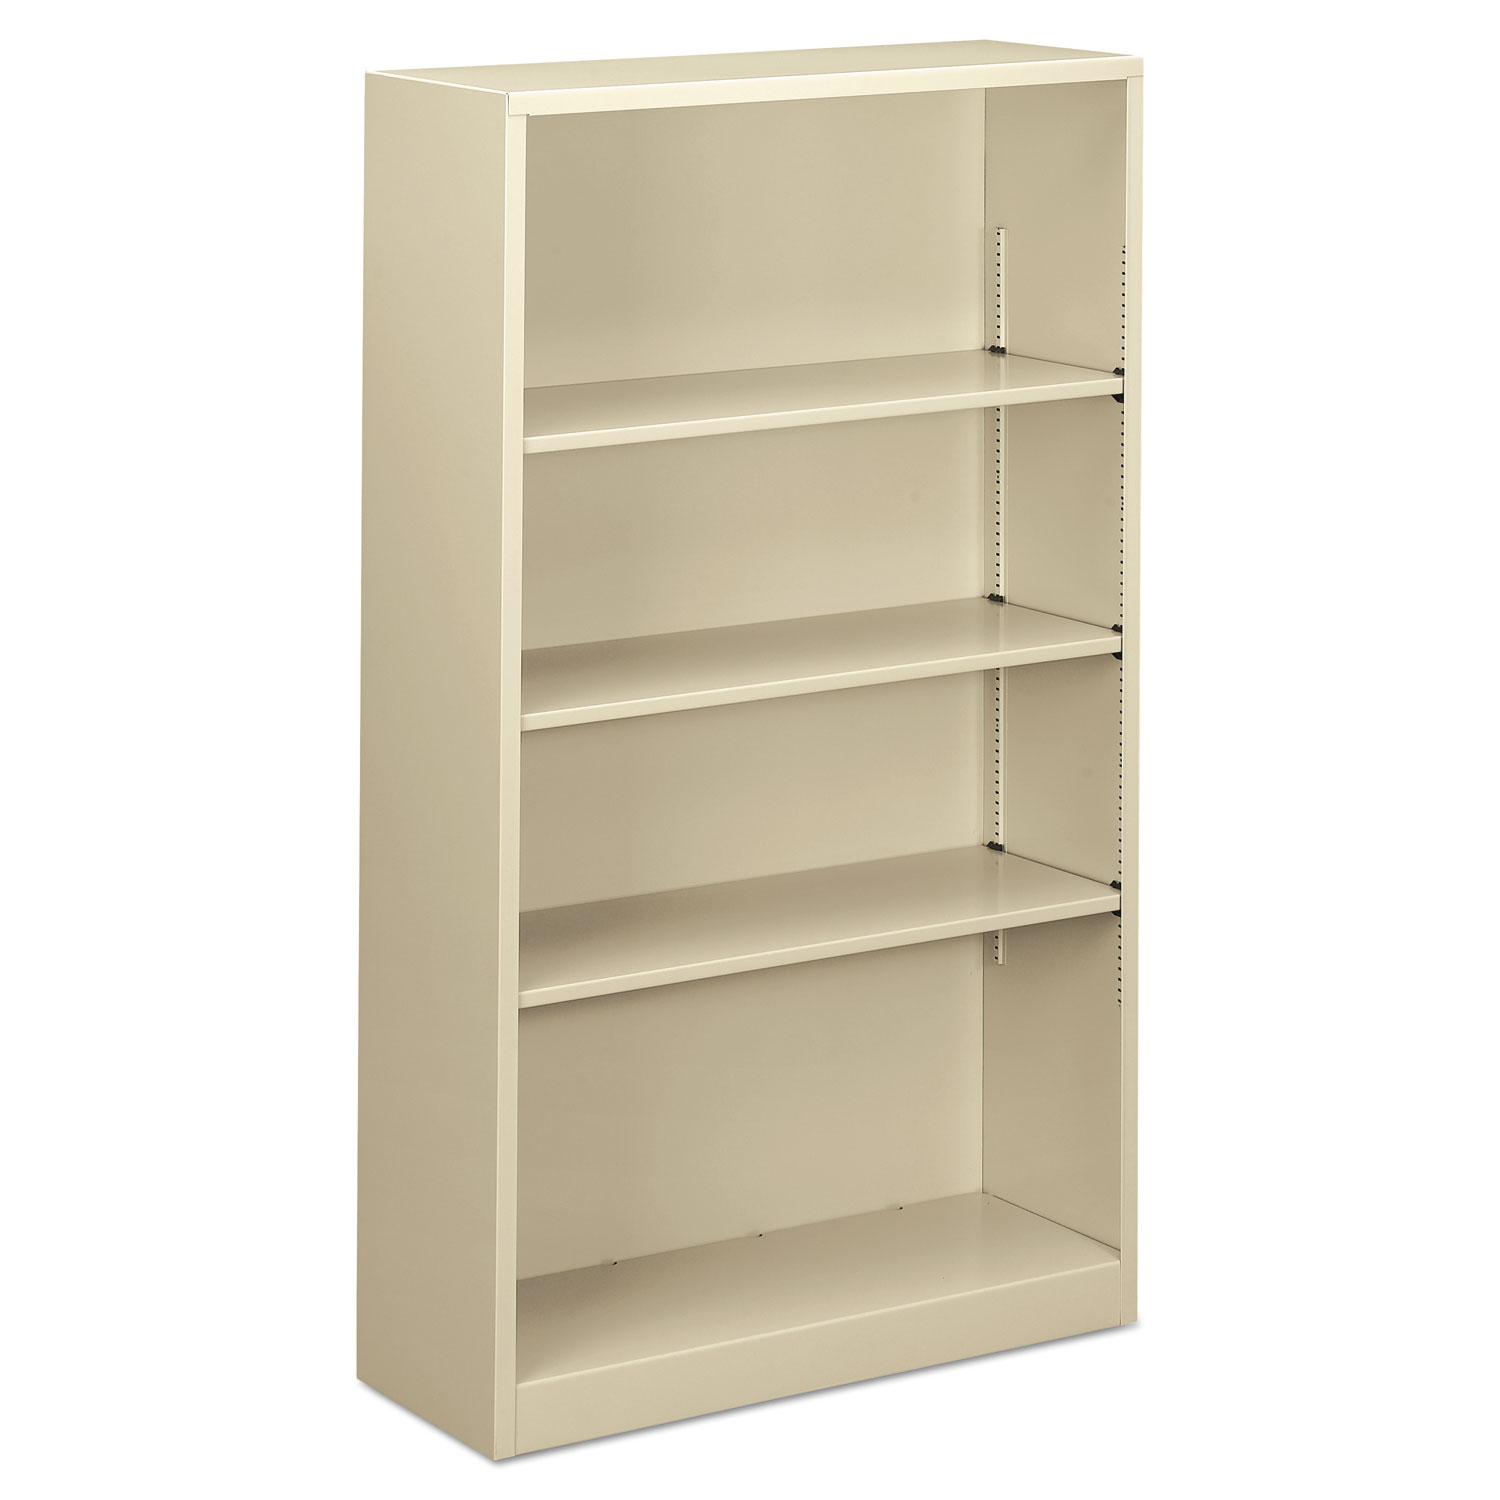  Alera ALEBCM45935PY Steel Bookcase, 4-Shelf, 34.5w x 12.63d x 59h, Putty (ALEBCM45935PY) 